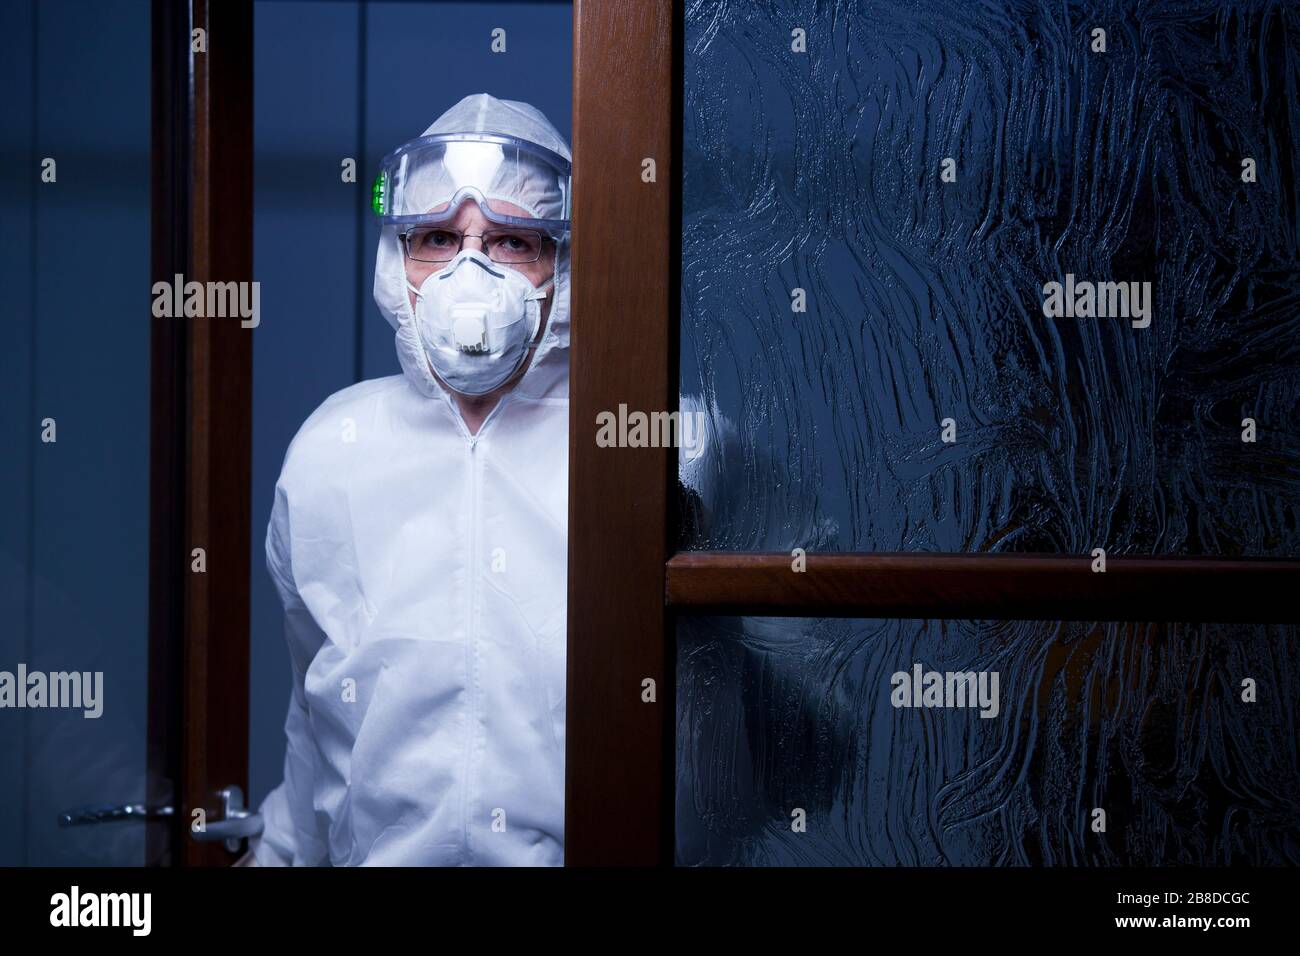 Müder Arzt, der die Kamera am Eingang eines Krankenhauses mit Schutzkleidung betrachtet - nachts mit dunkelblauem Hintergrund aufgenommen Stockfoto